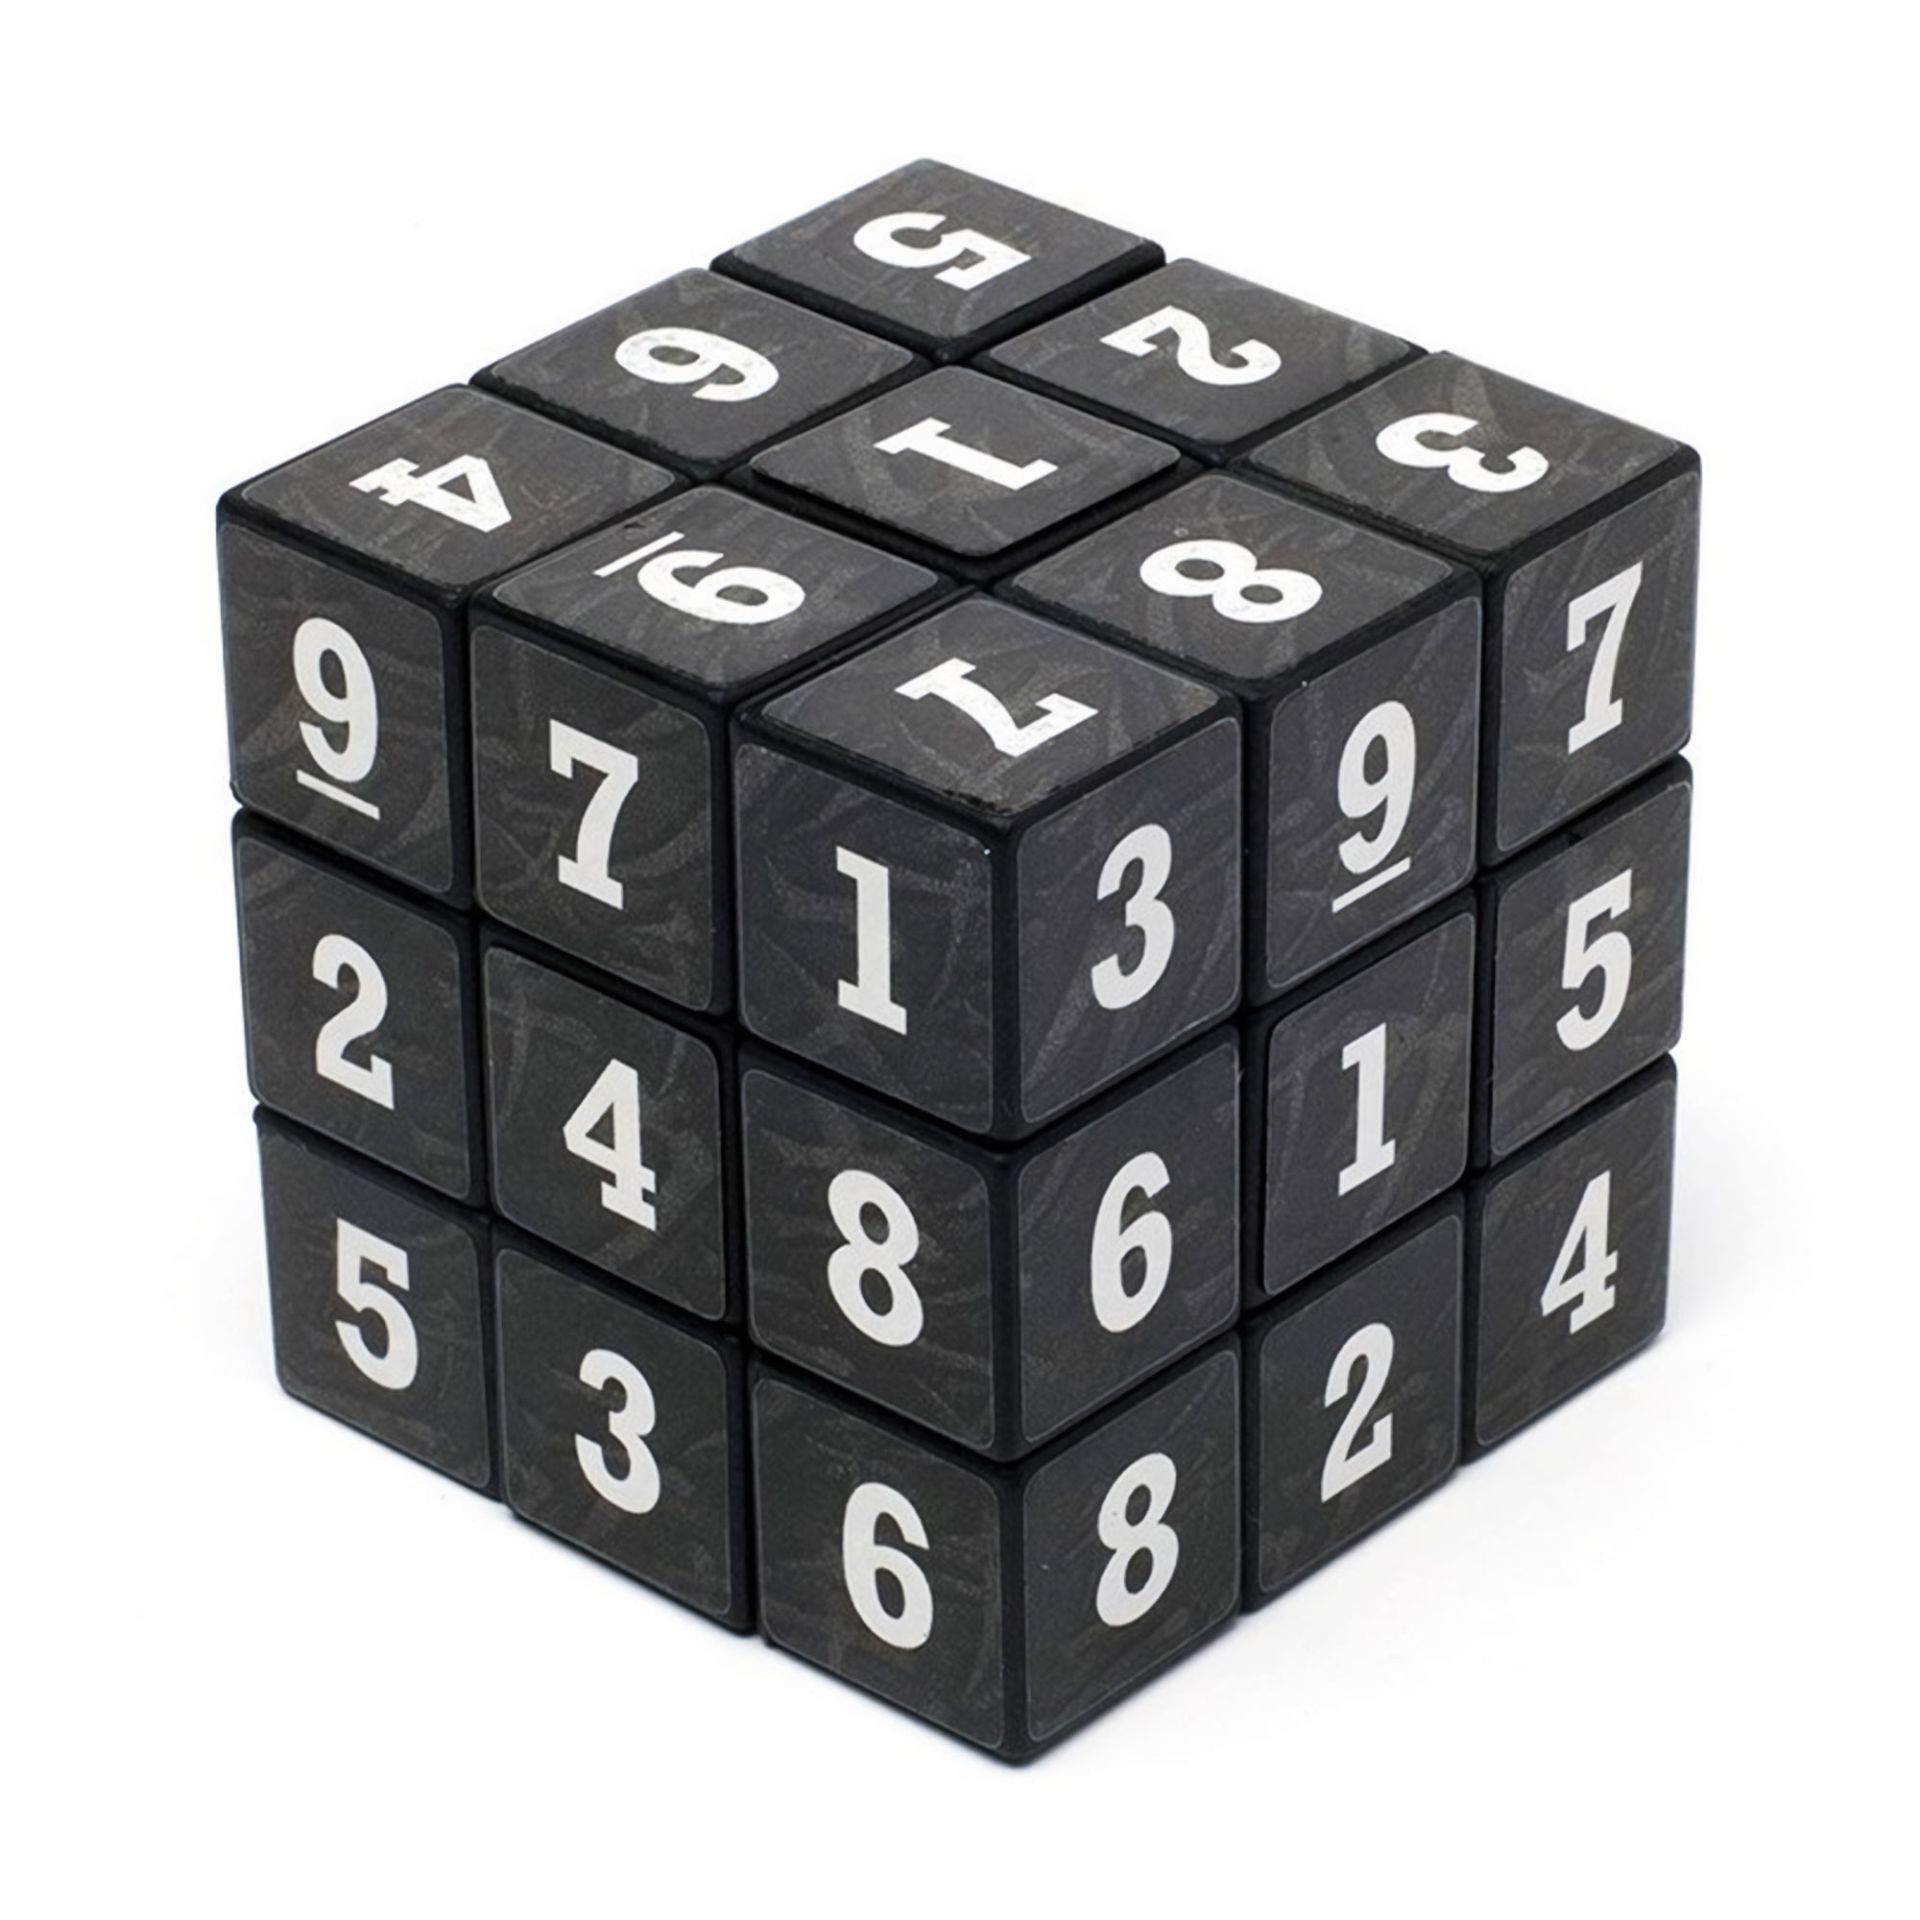 Кубик рубик буквы. Головоломка "Cube Magic". Кубик рубик судоку. Кубик Рубика судоку черный. Кубик Рубика 3х3 с цифрами.